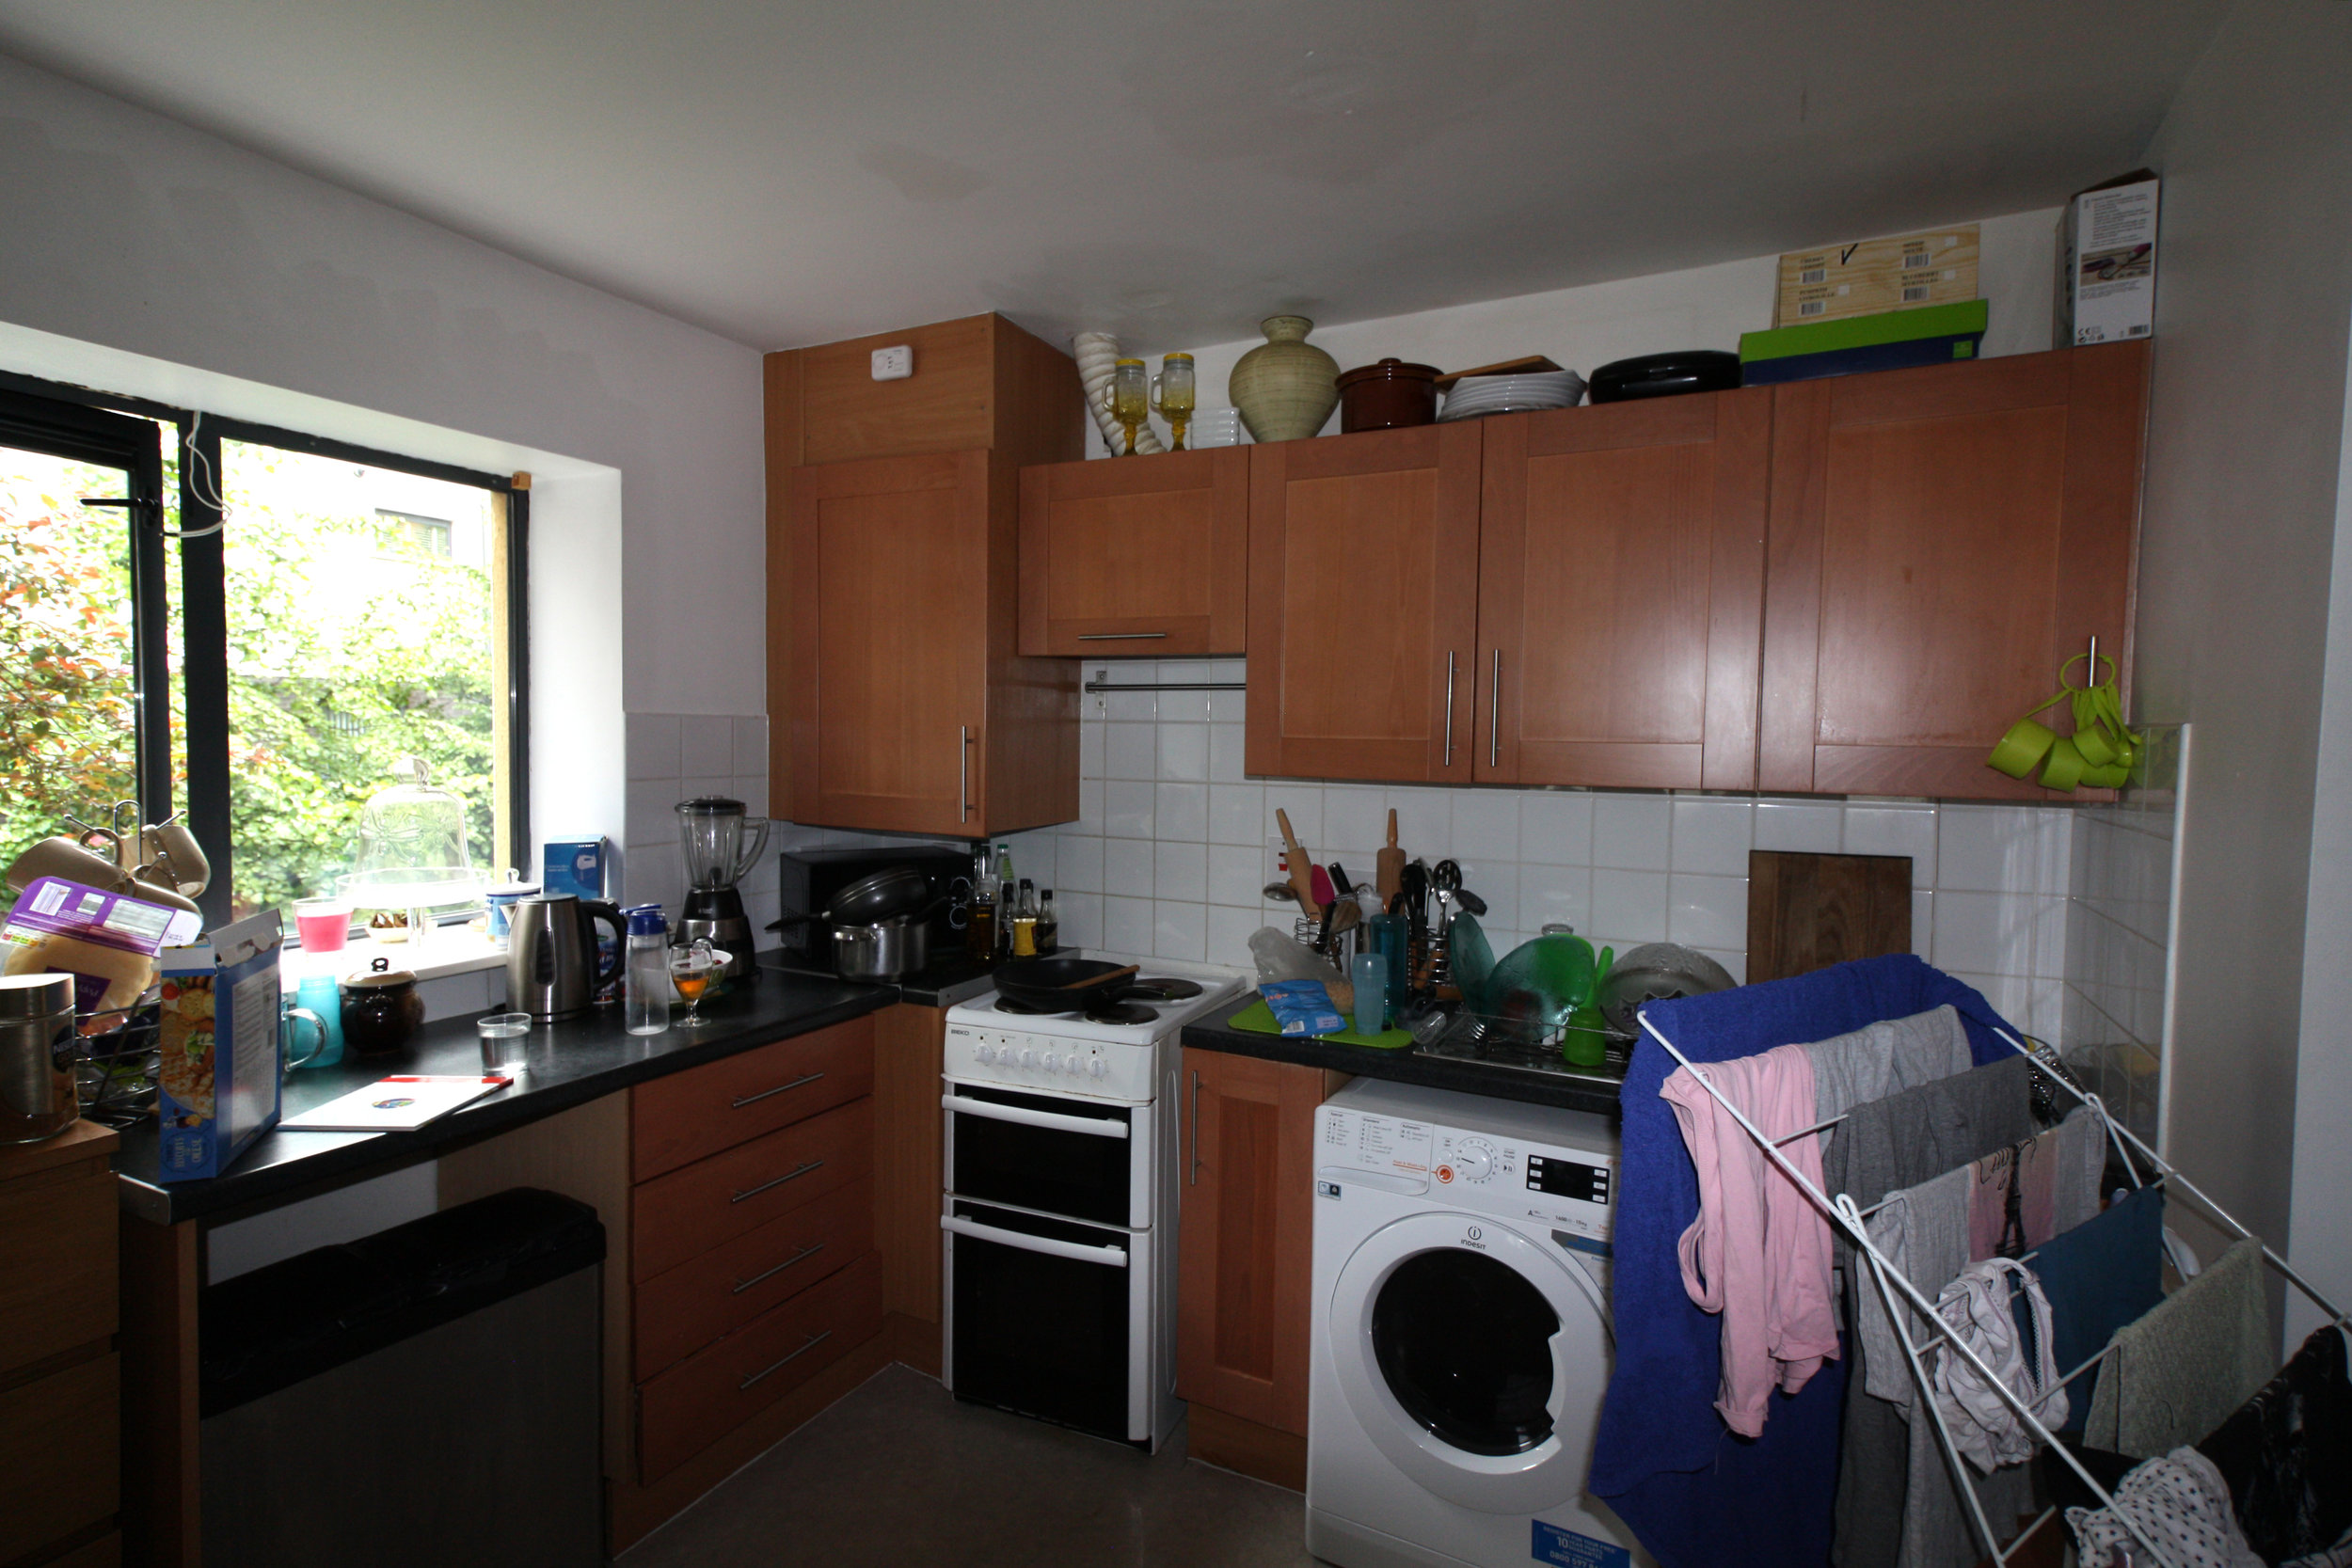 HR - Dublin 1 - Before - Living Room Kitchen 3.jpg